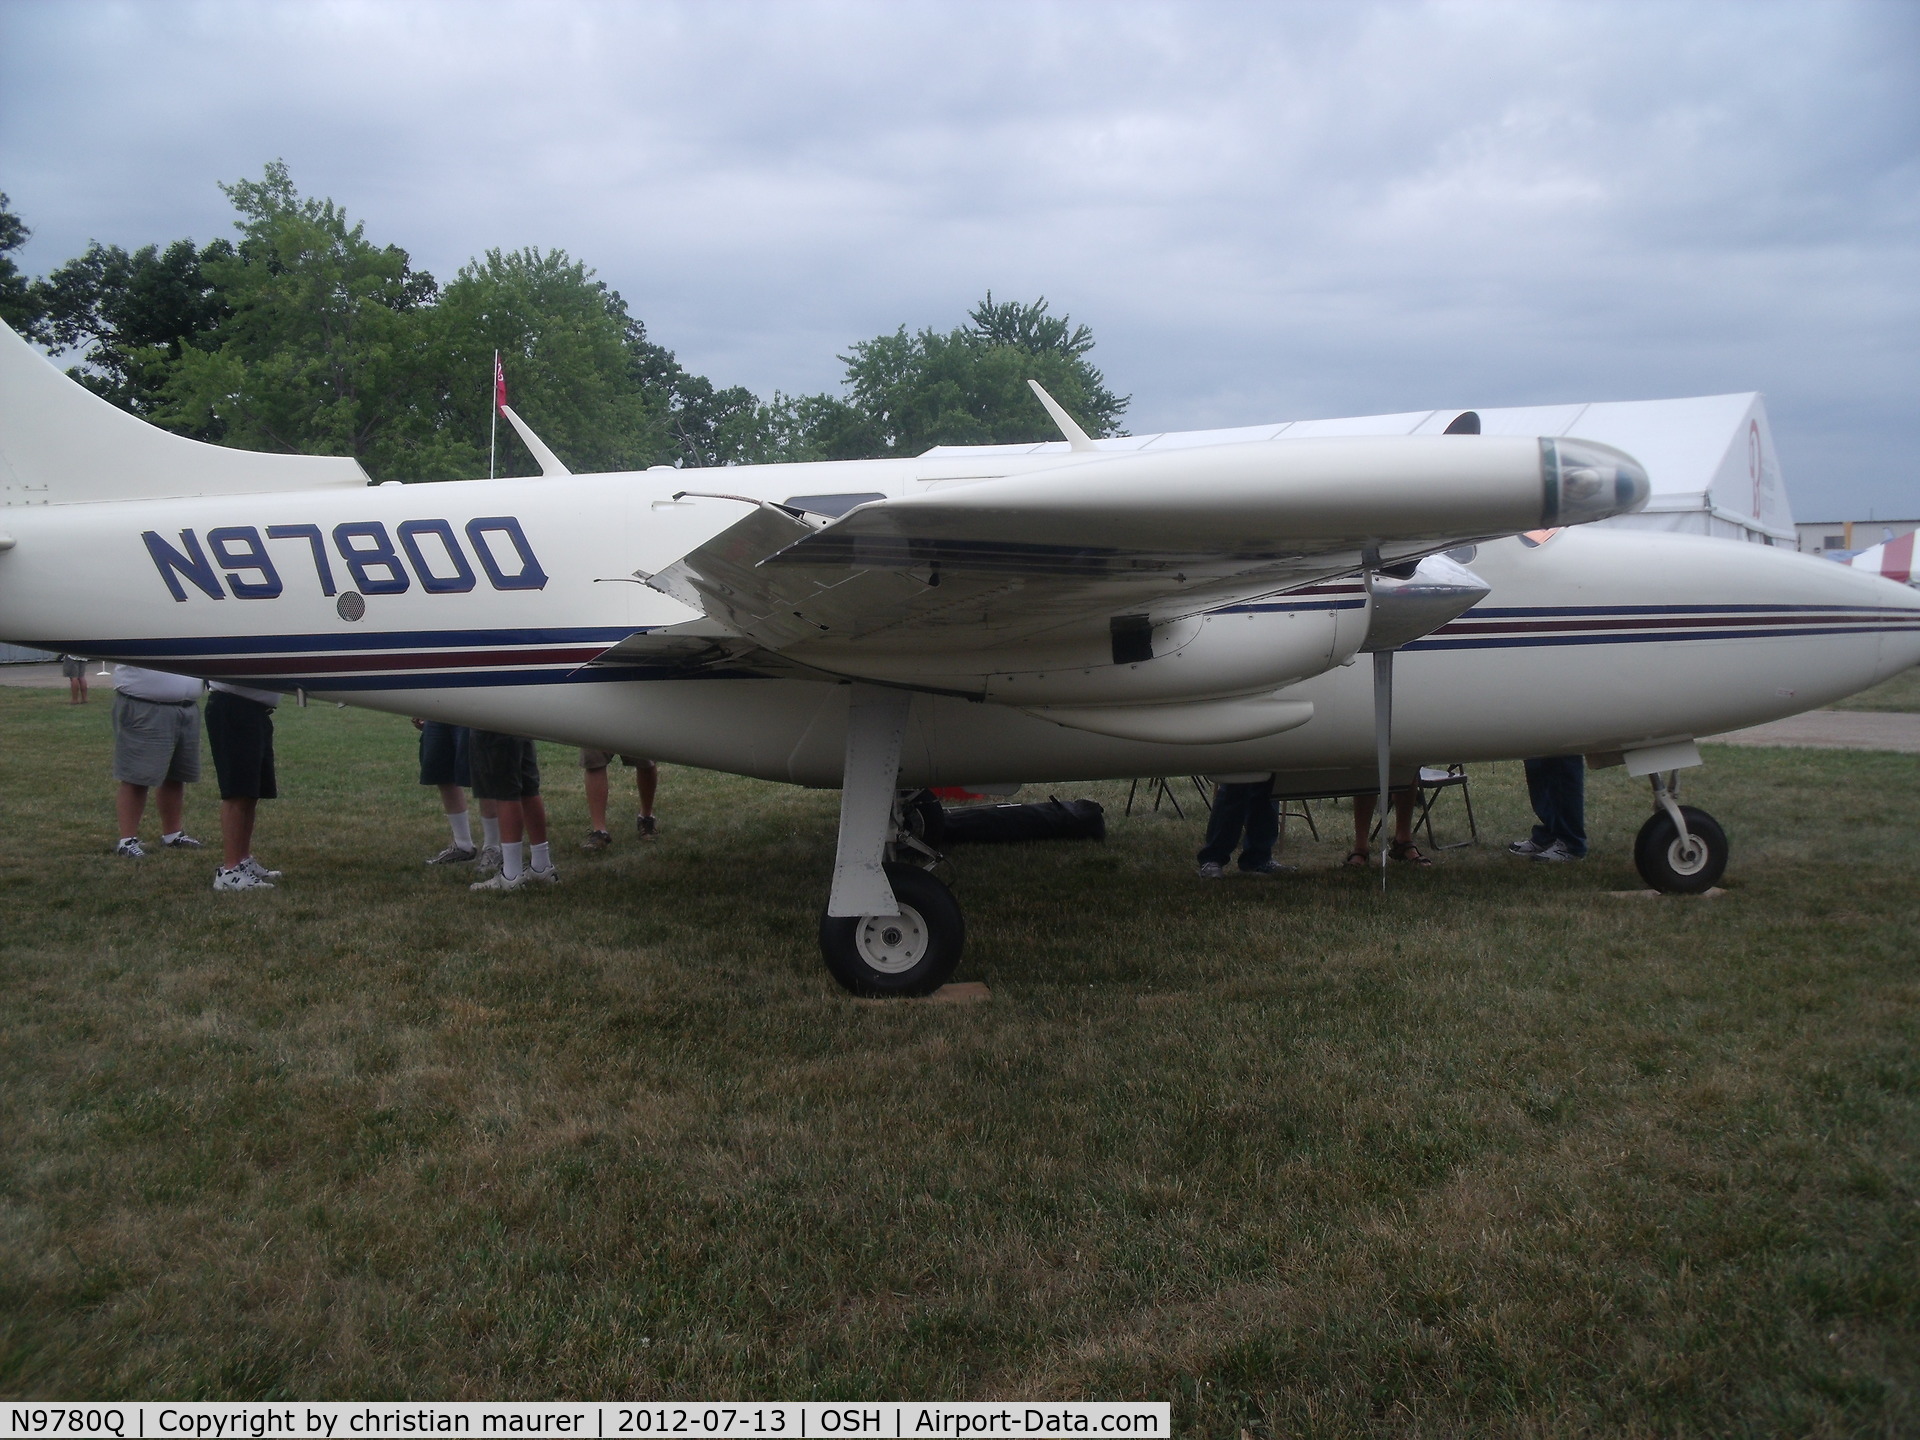 N9780Q, 1977 Smith Aerostar 601P C/N 61P-0408-144, aerostar